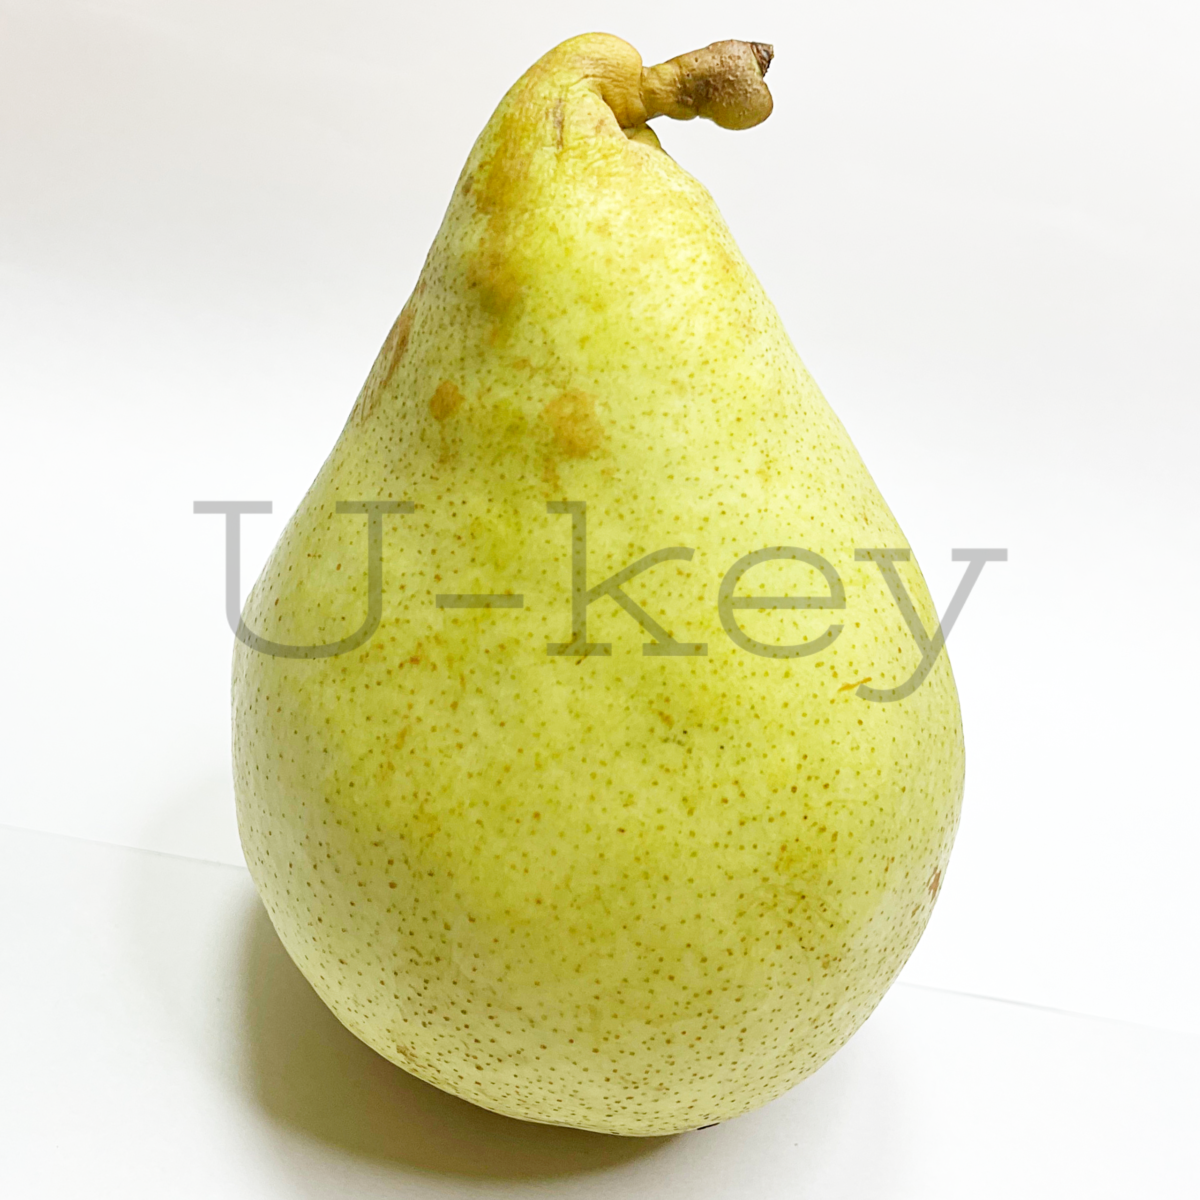 Pear ‘Marguerite marillat’ Pyrus communis